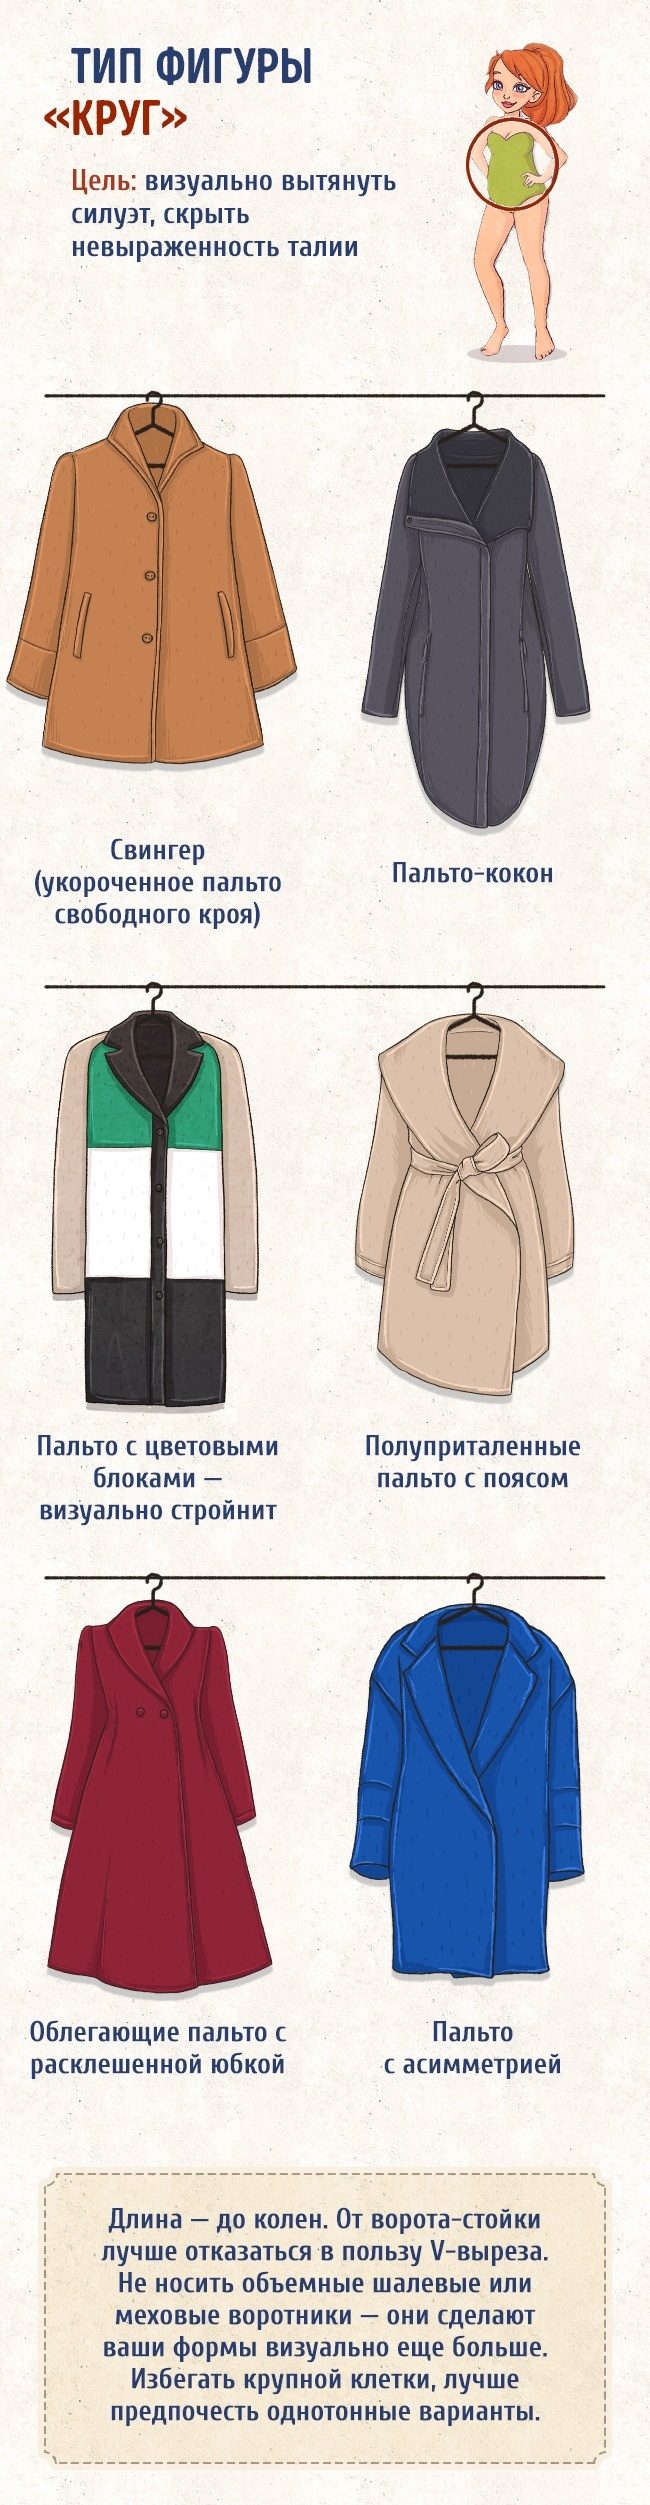 Как выбрать идеальное пальто по типу фигуры